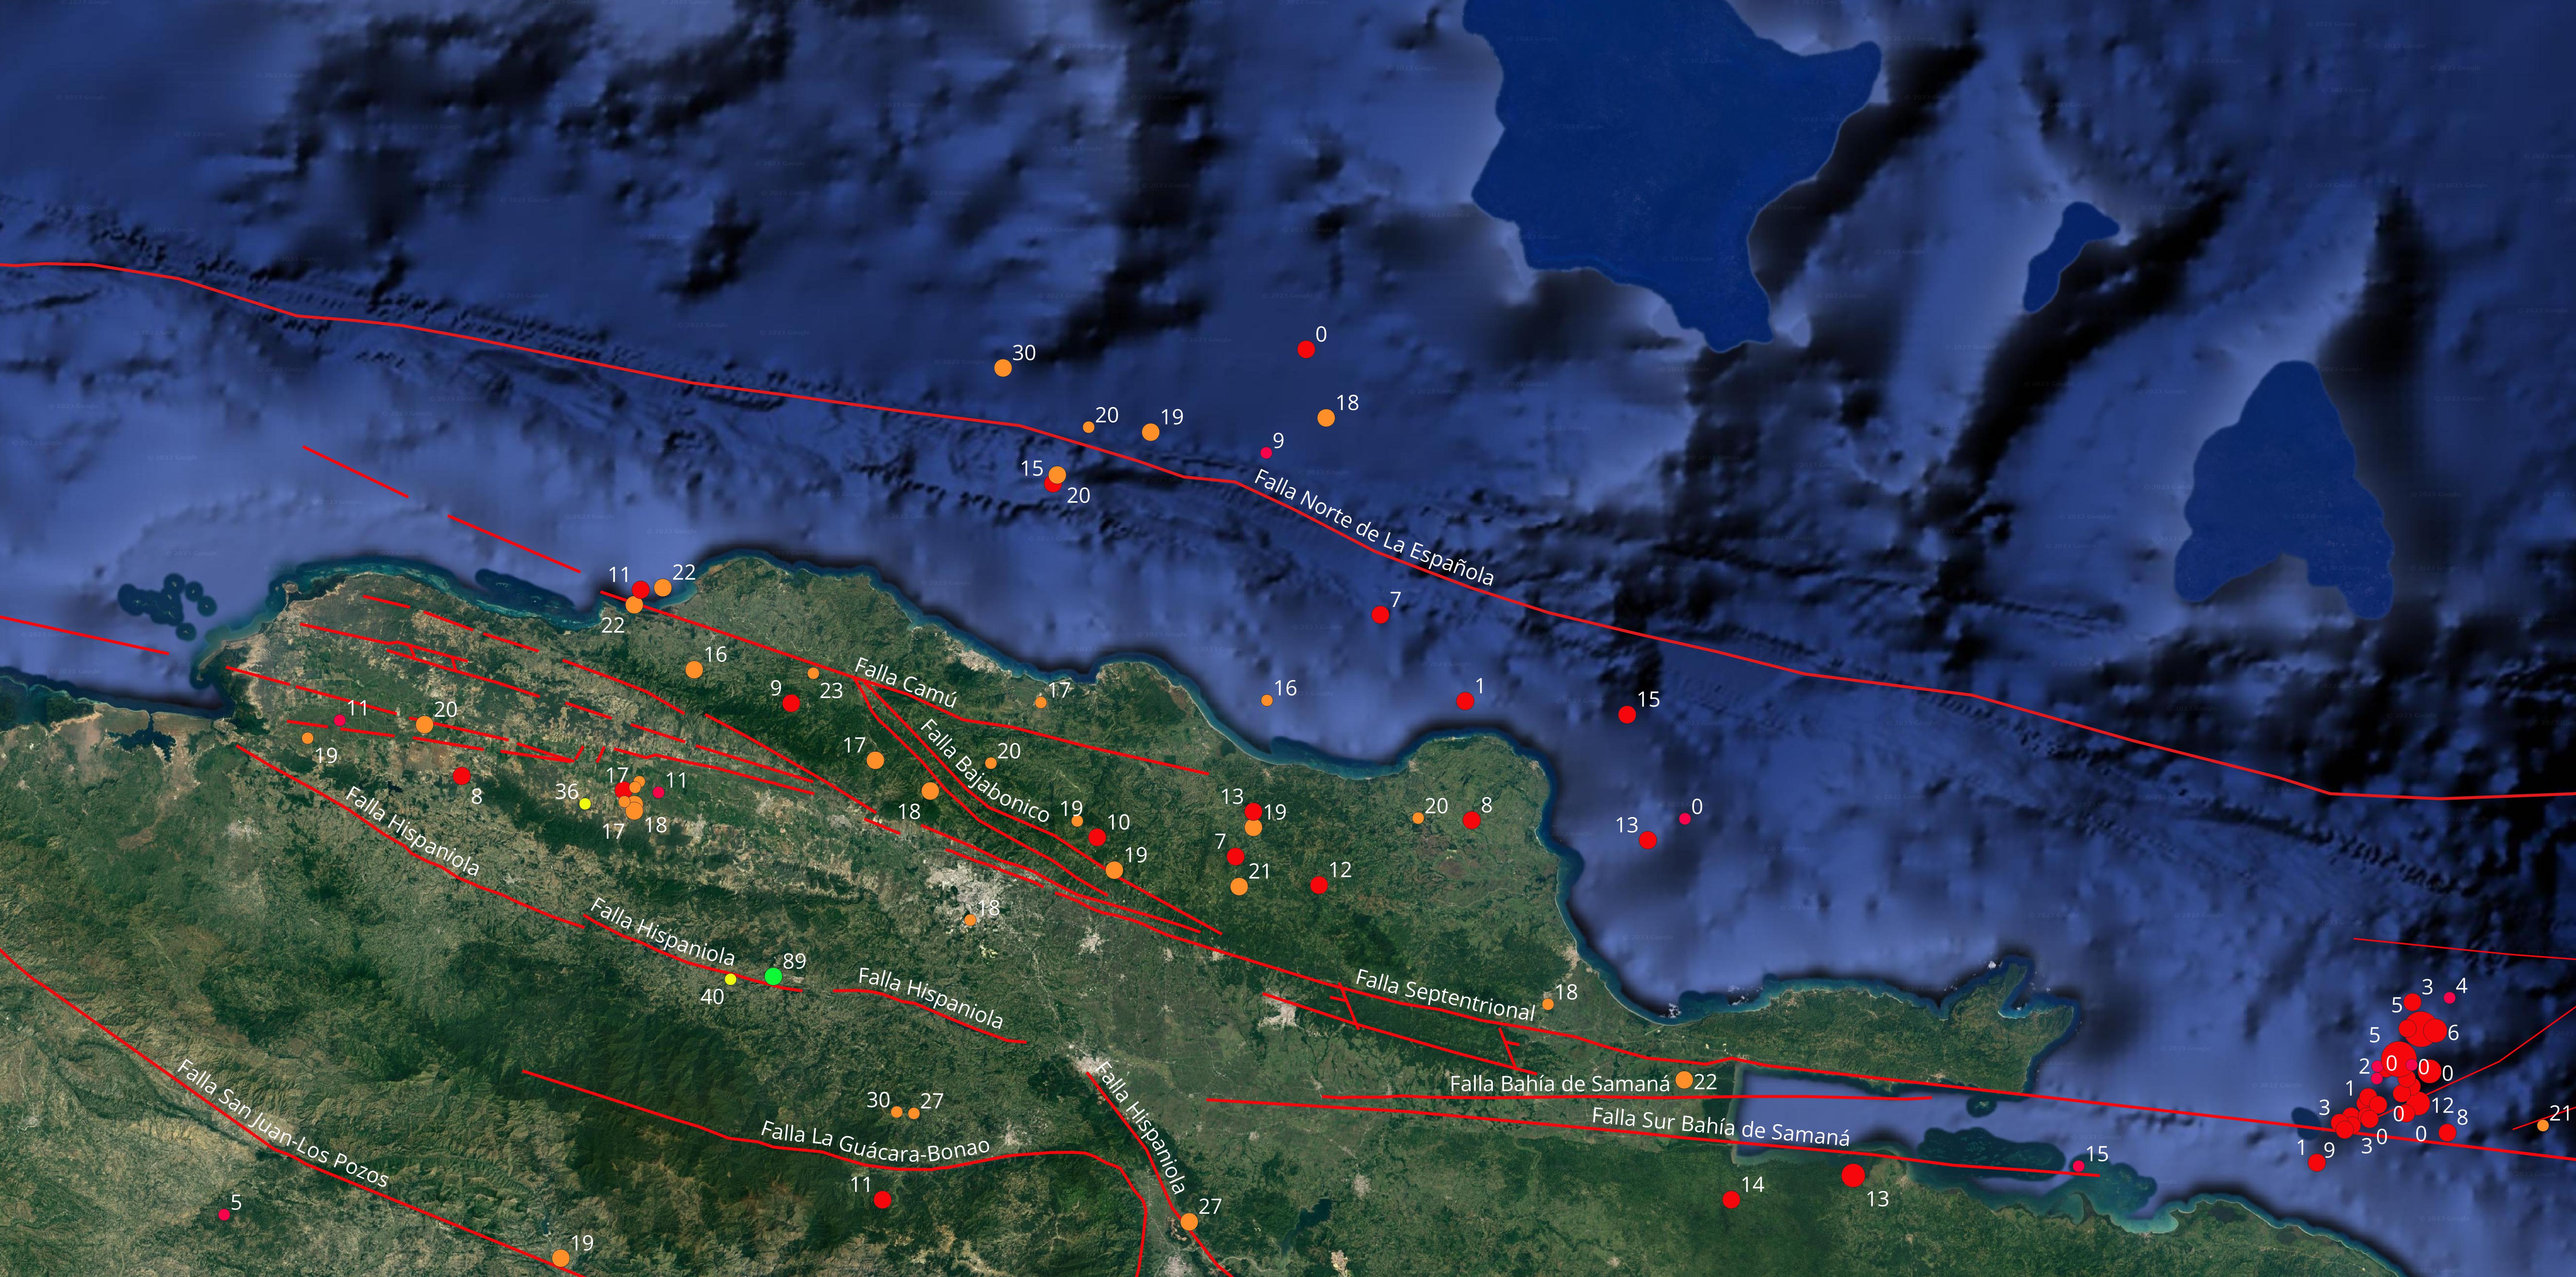 Imagen N°1, Mapa cortesía de Google Earth mostrando epicentros de temblores ocurridos el pasado mes de diciembre en la región norte de nuestra isla. Se indica la profundidad en Km al lado de cada epicentro, así mismo las principales fallas geológicas.